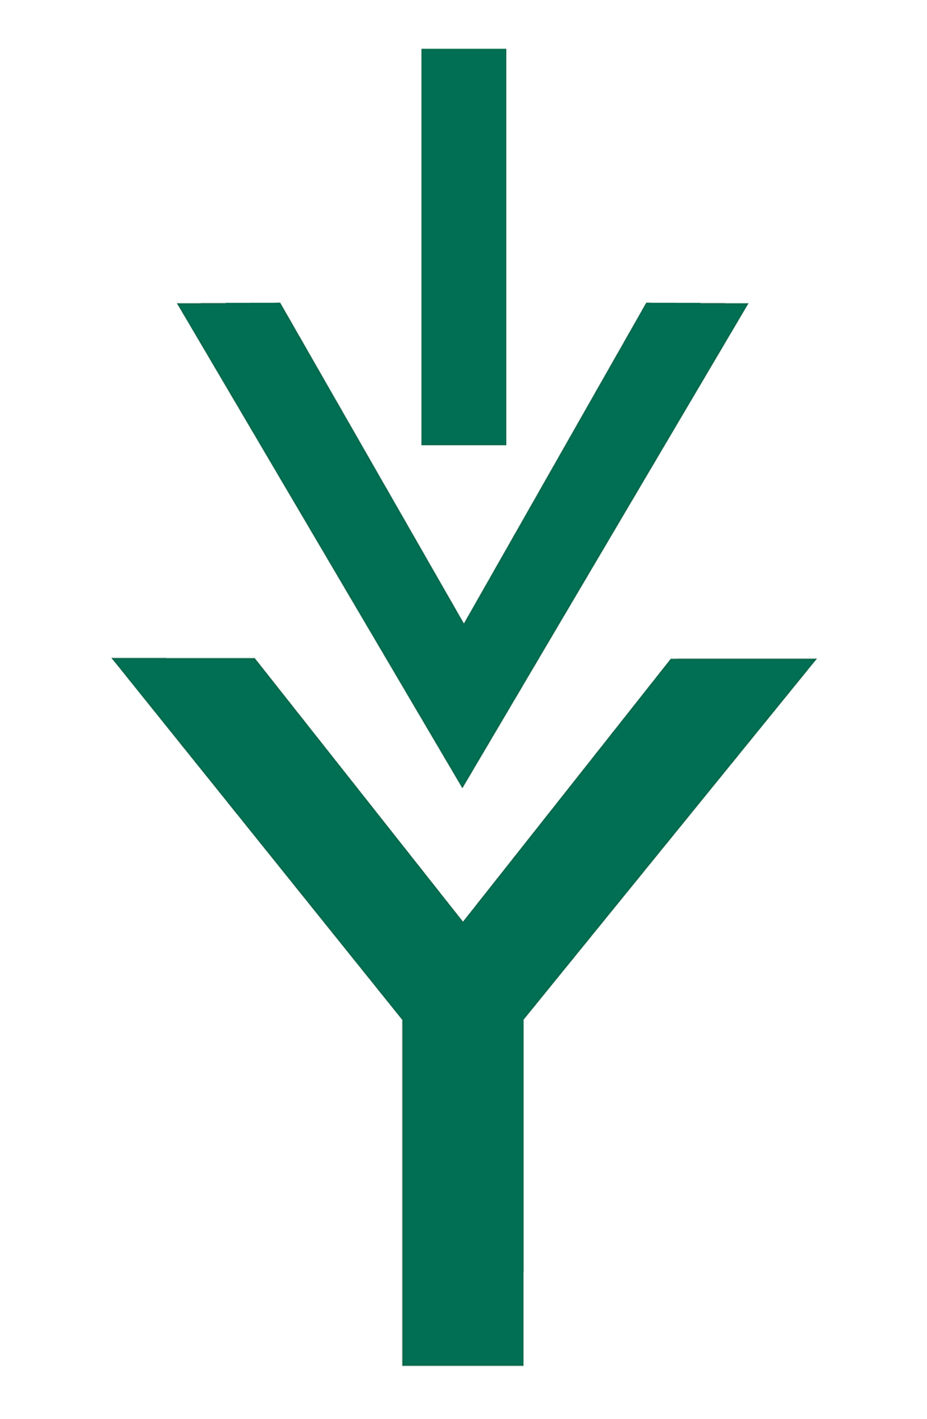 Ivy Tech Logo